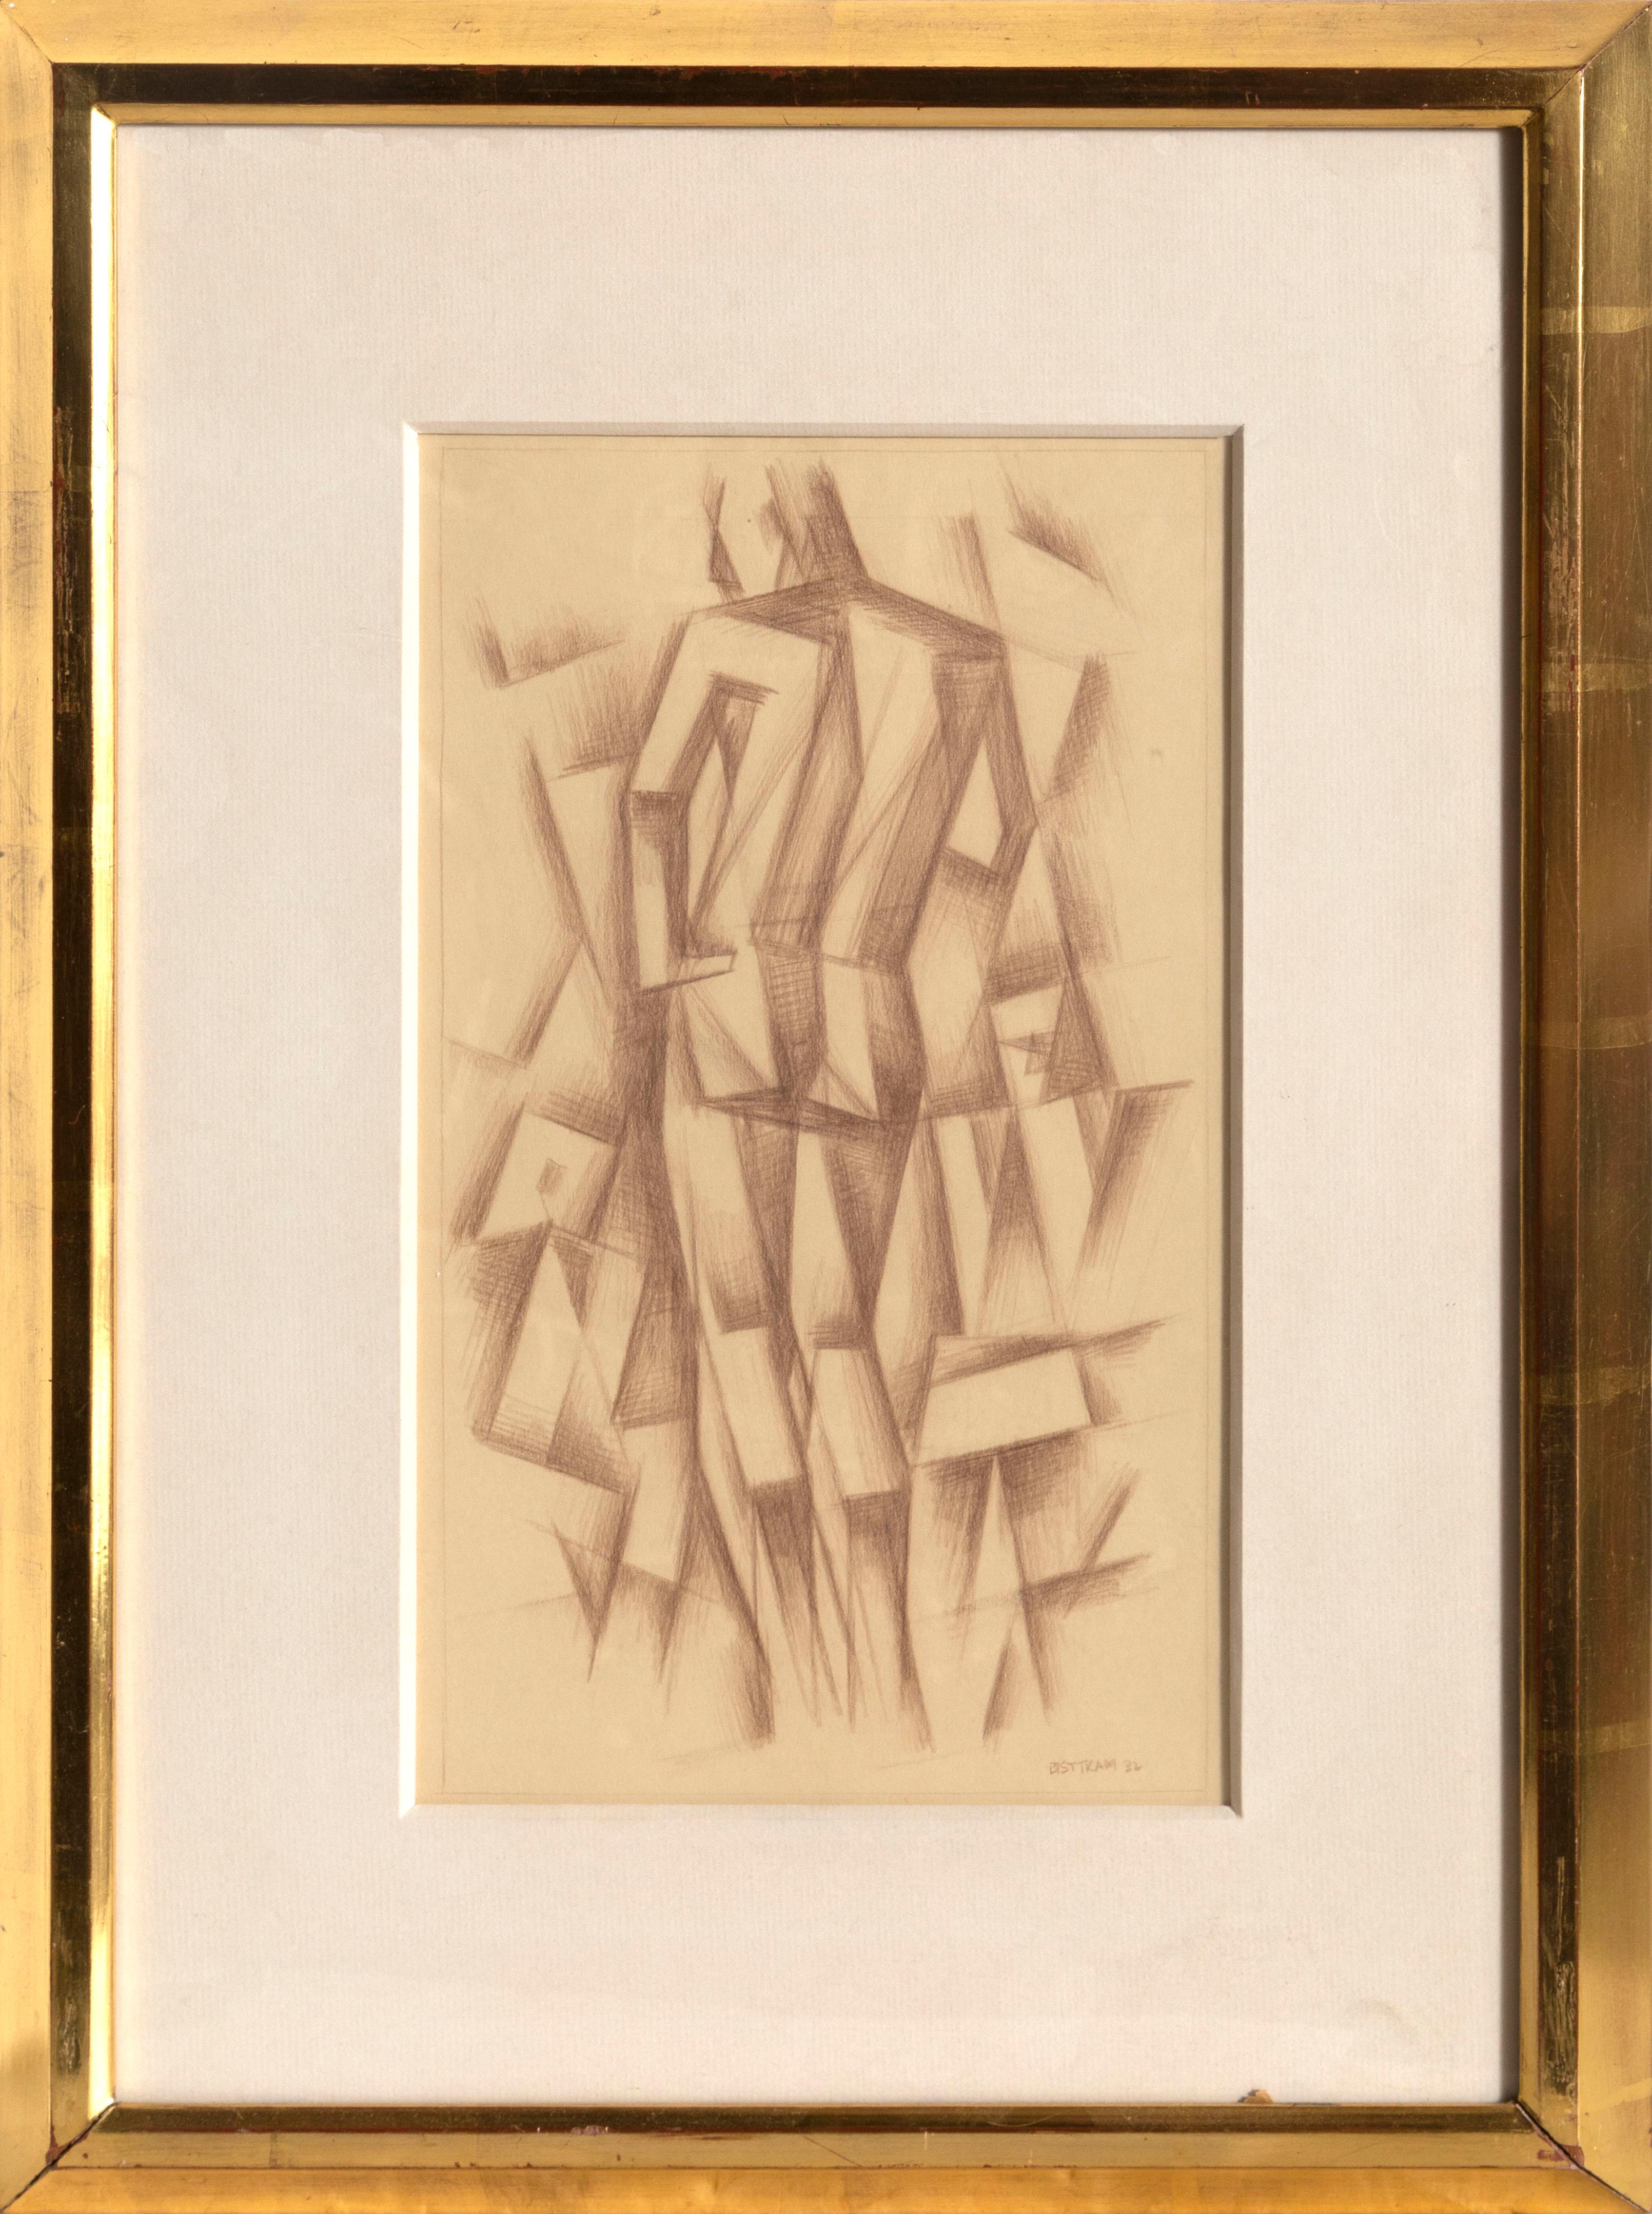 Standing Figure, Cubist Drawing by Emil Bissttram - Art by Emil Bisttram